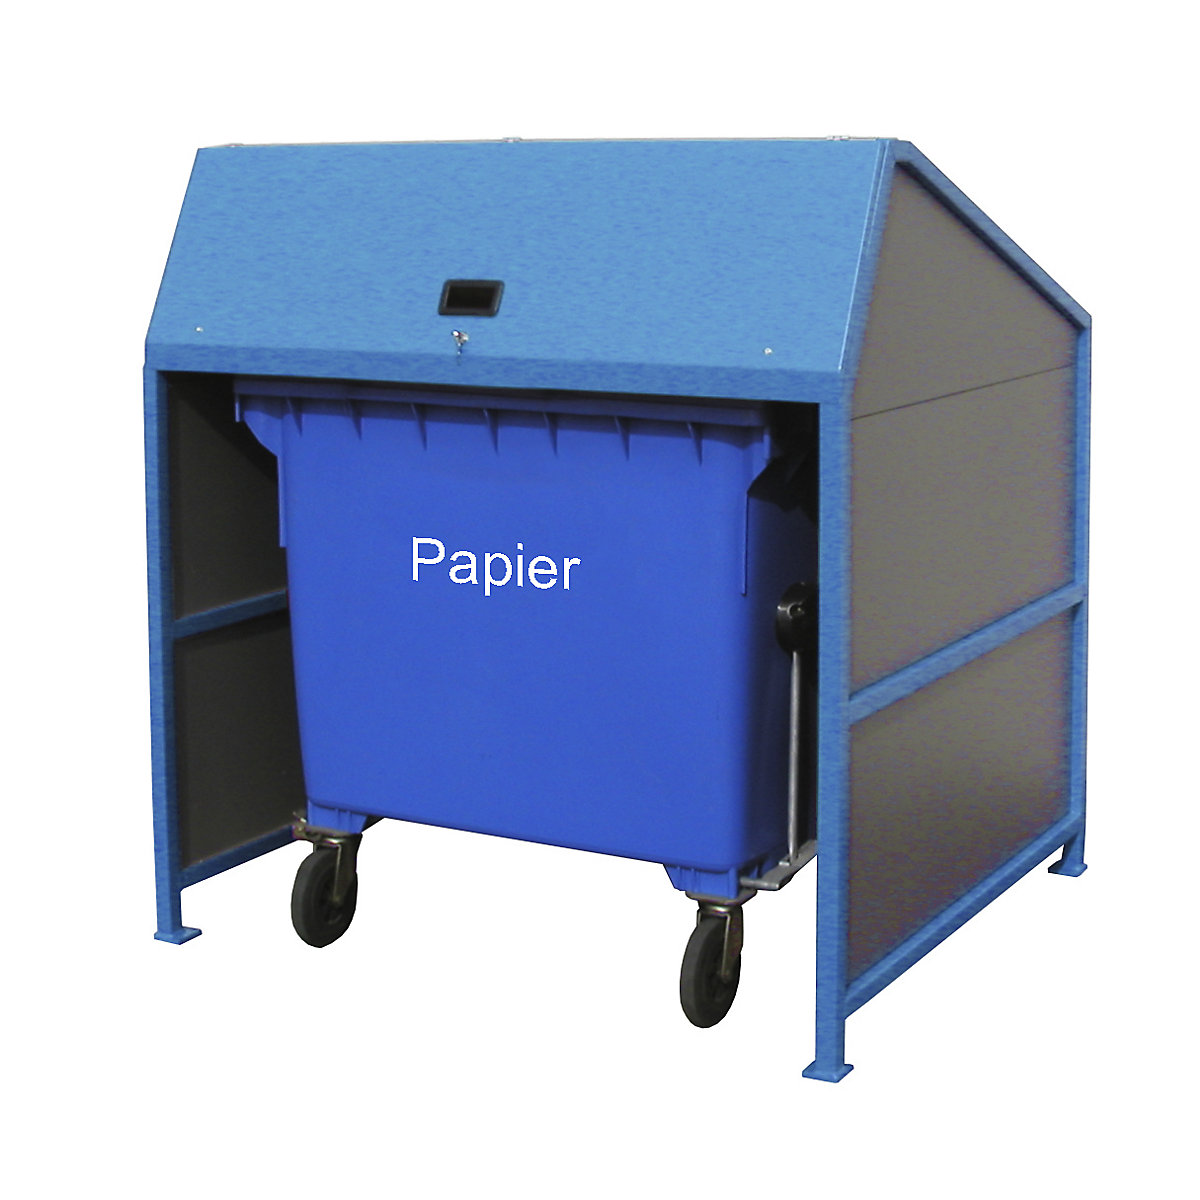 EUROKRAFTpro – Abri pour poubelles, fermé des 3 côtés, coloris cadre bleu